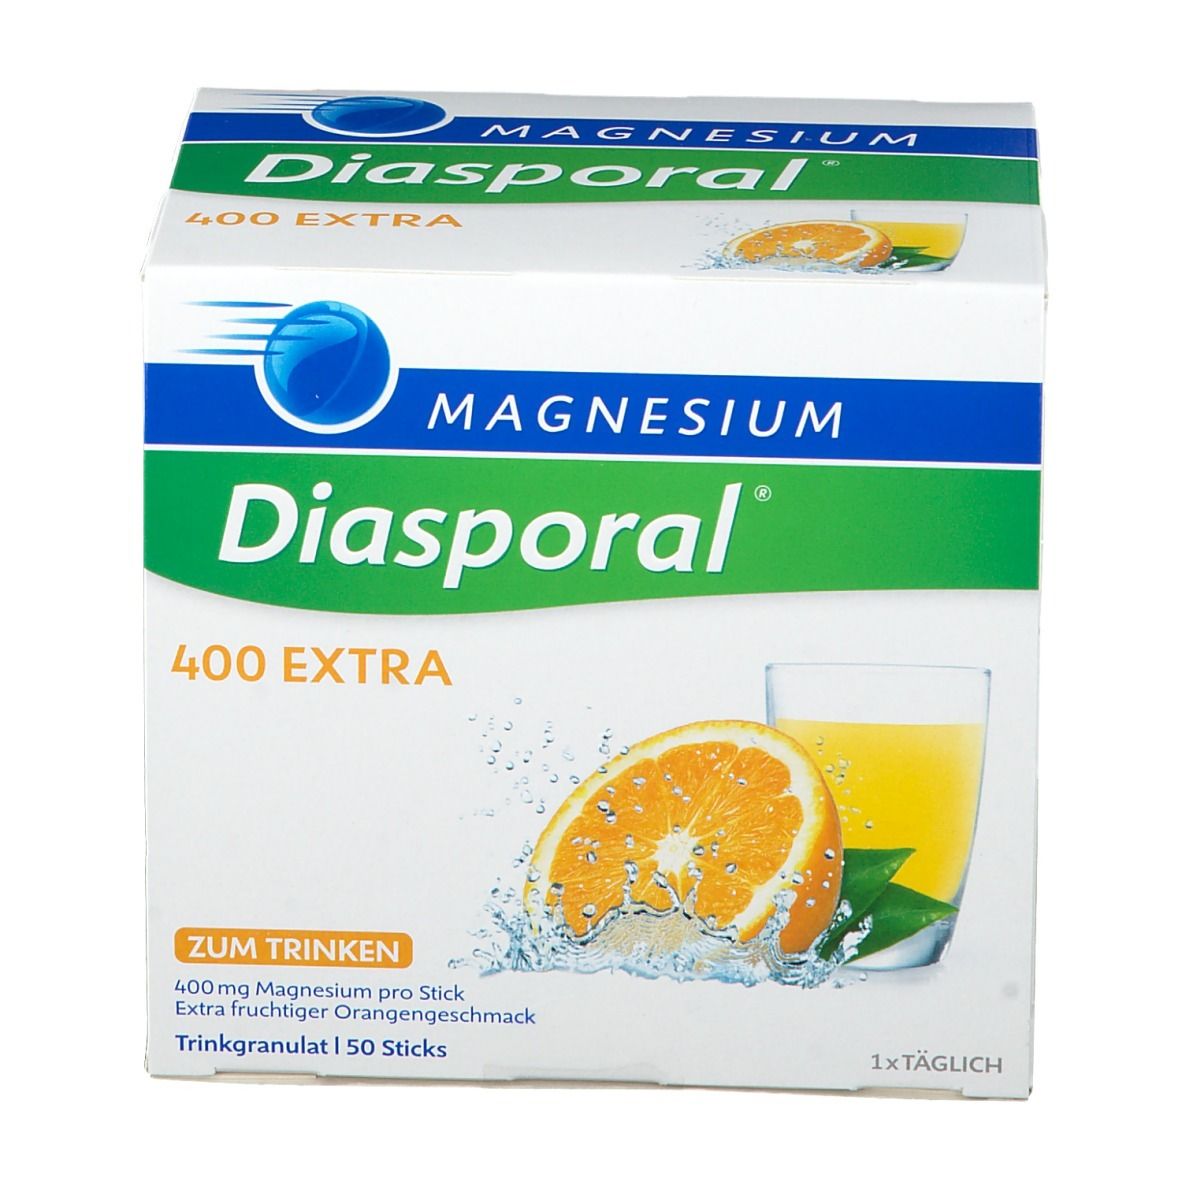 Magnesium-Diasporal® 400 EXTRA